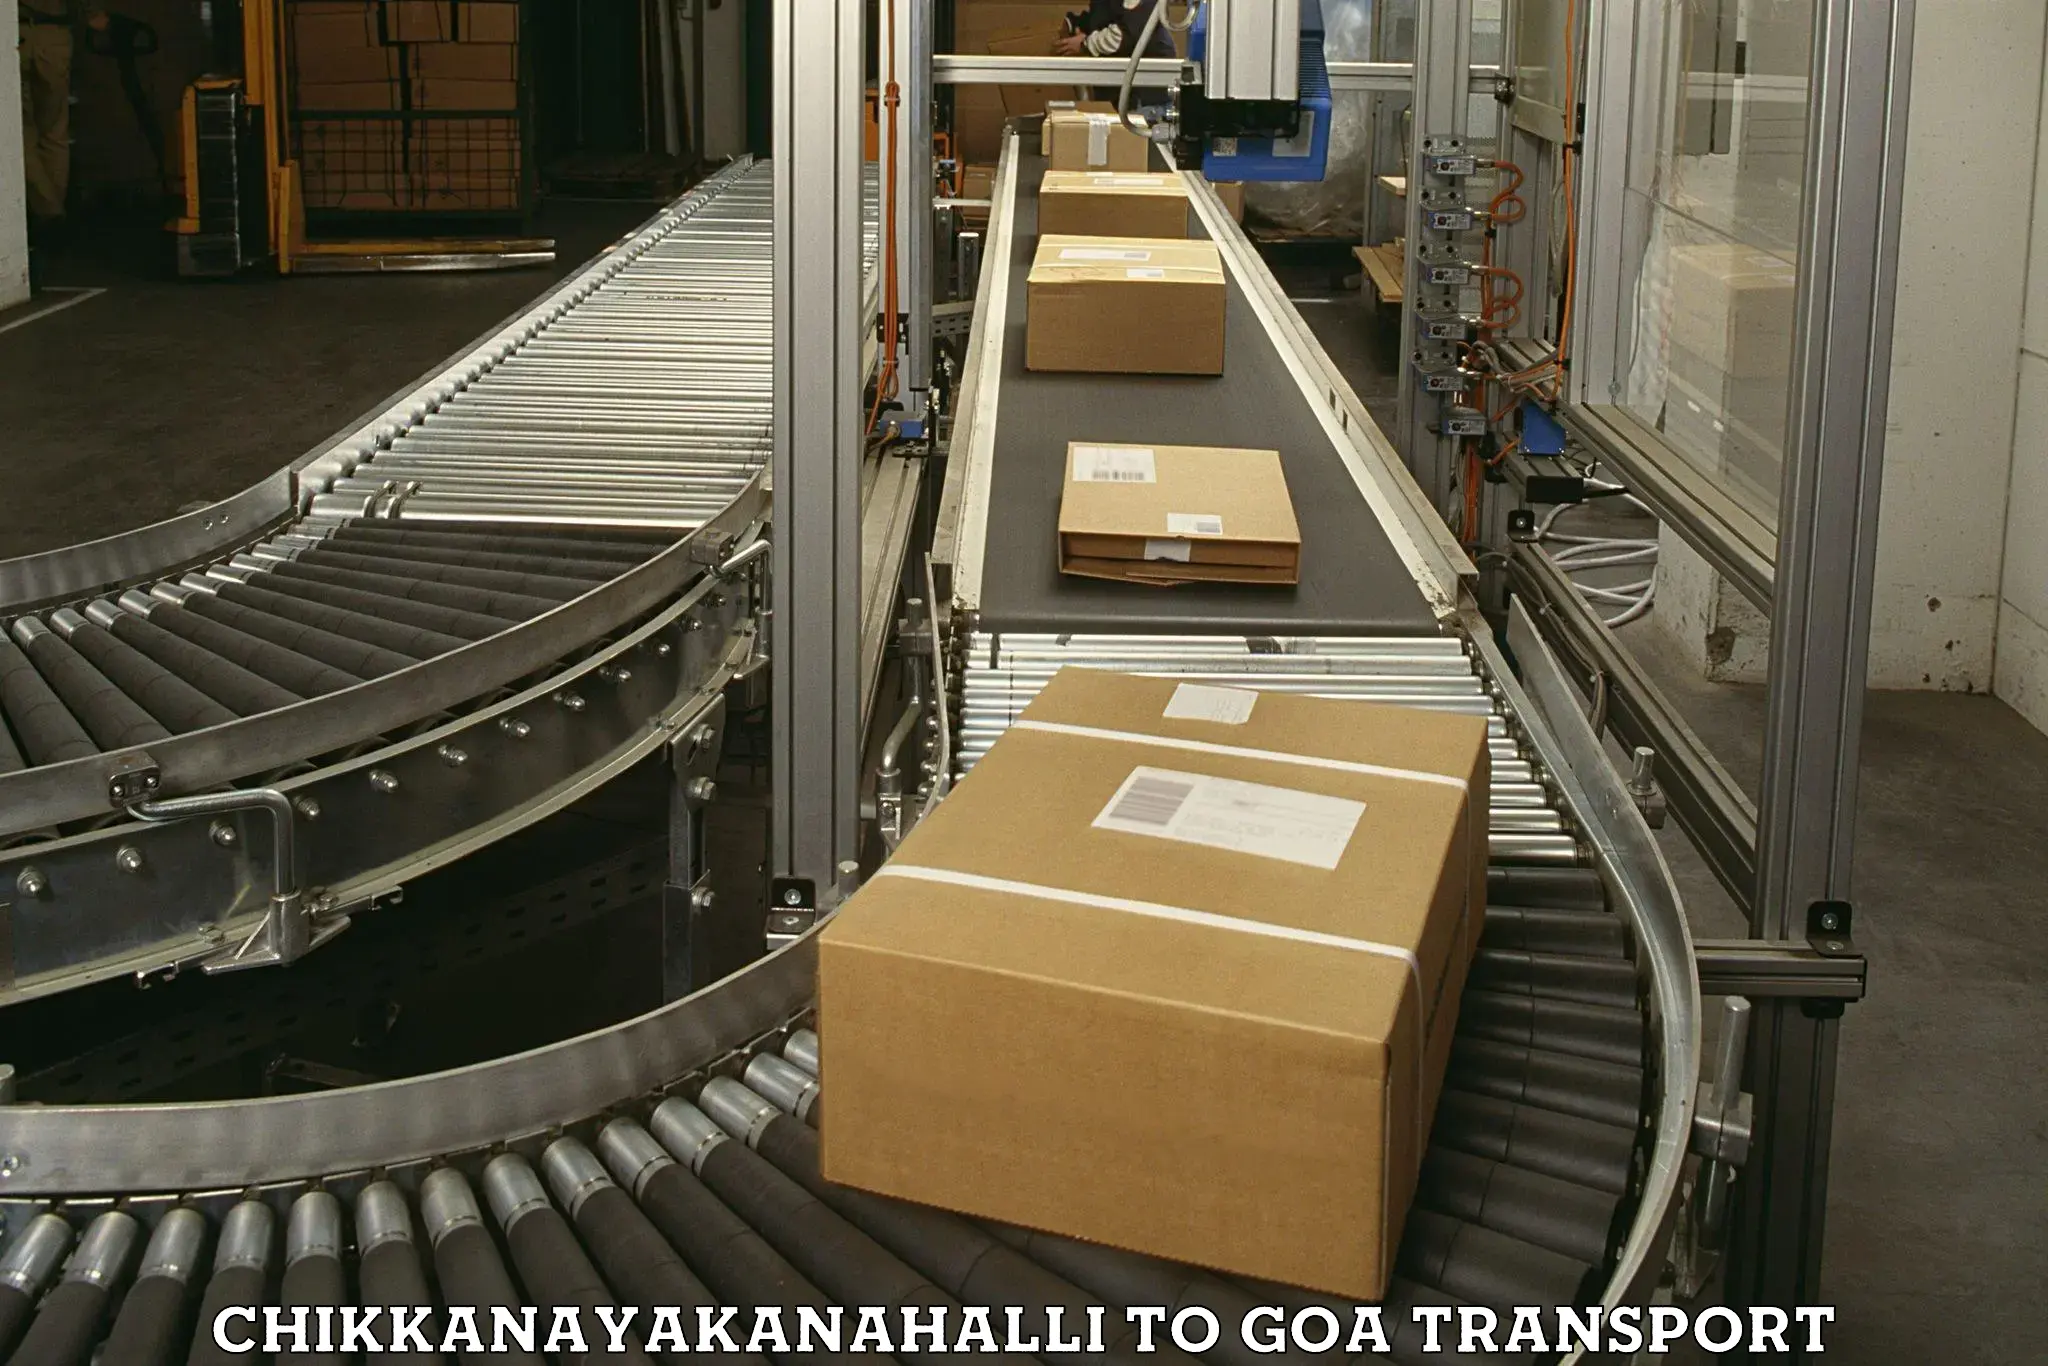 Furniture transport service Chikkanayakanahalli to Vasco da Gama